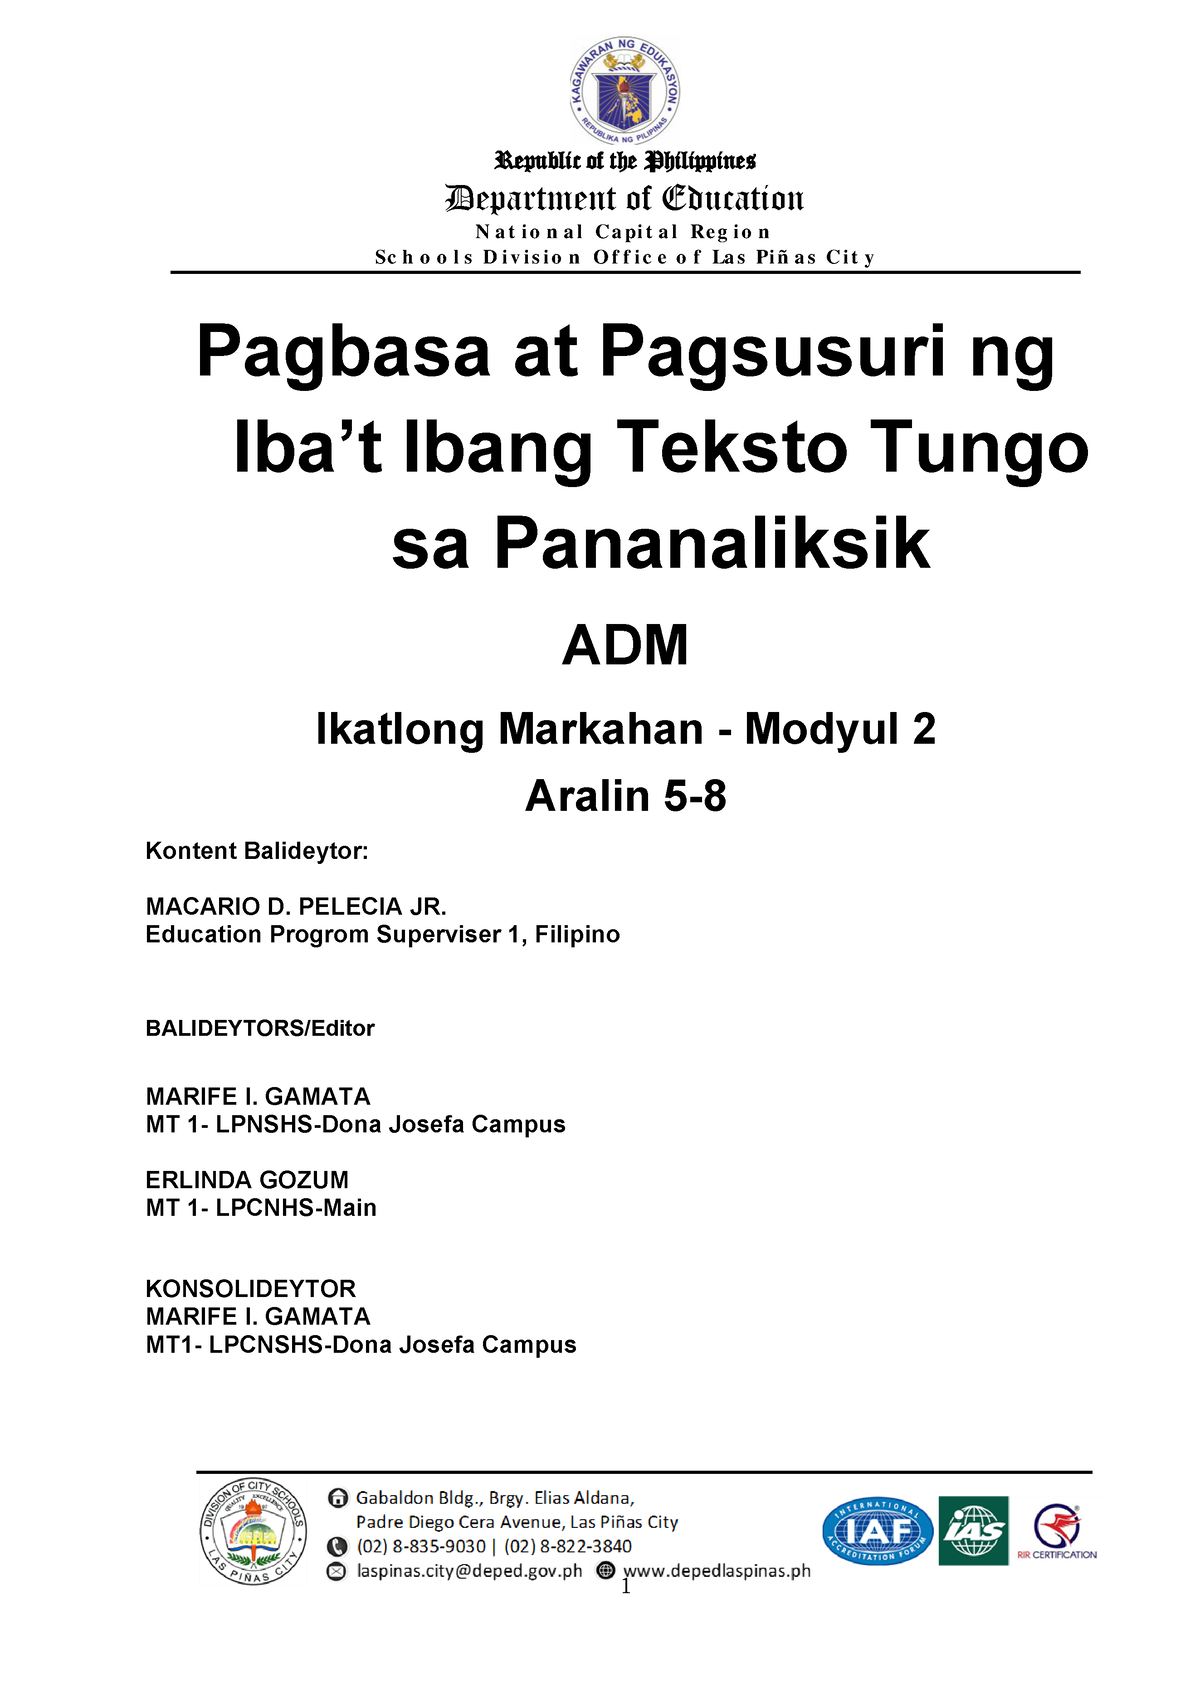 ADM-Q3- Modyul-2- Aralin-5-8-2021 - Pagbasa at Pagsusuri ng Iba't 